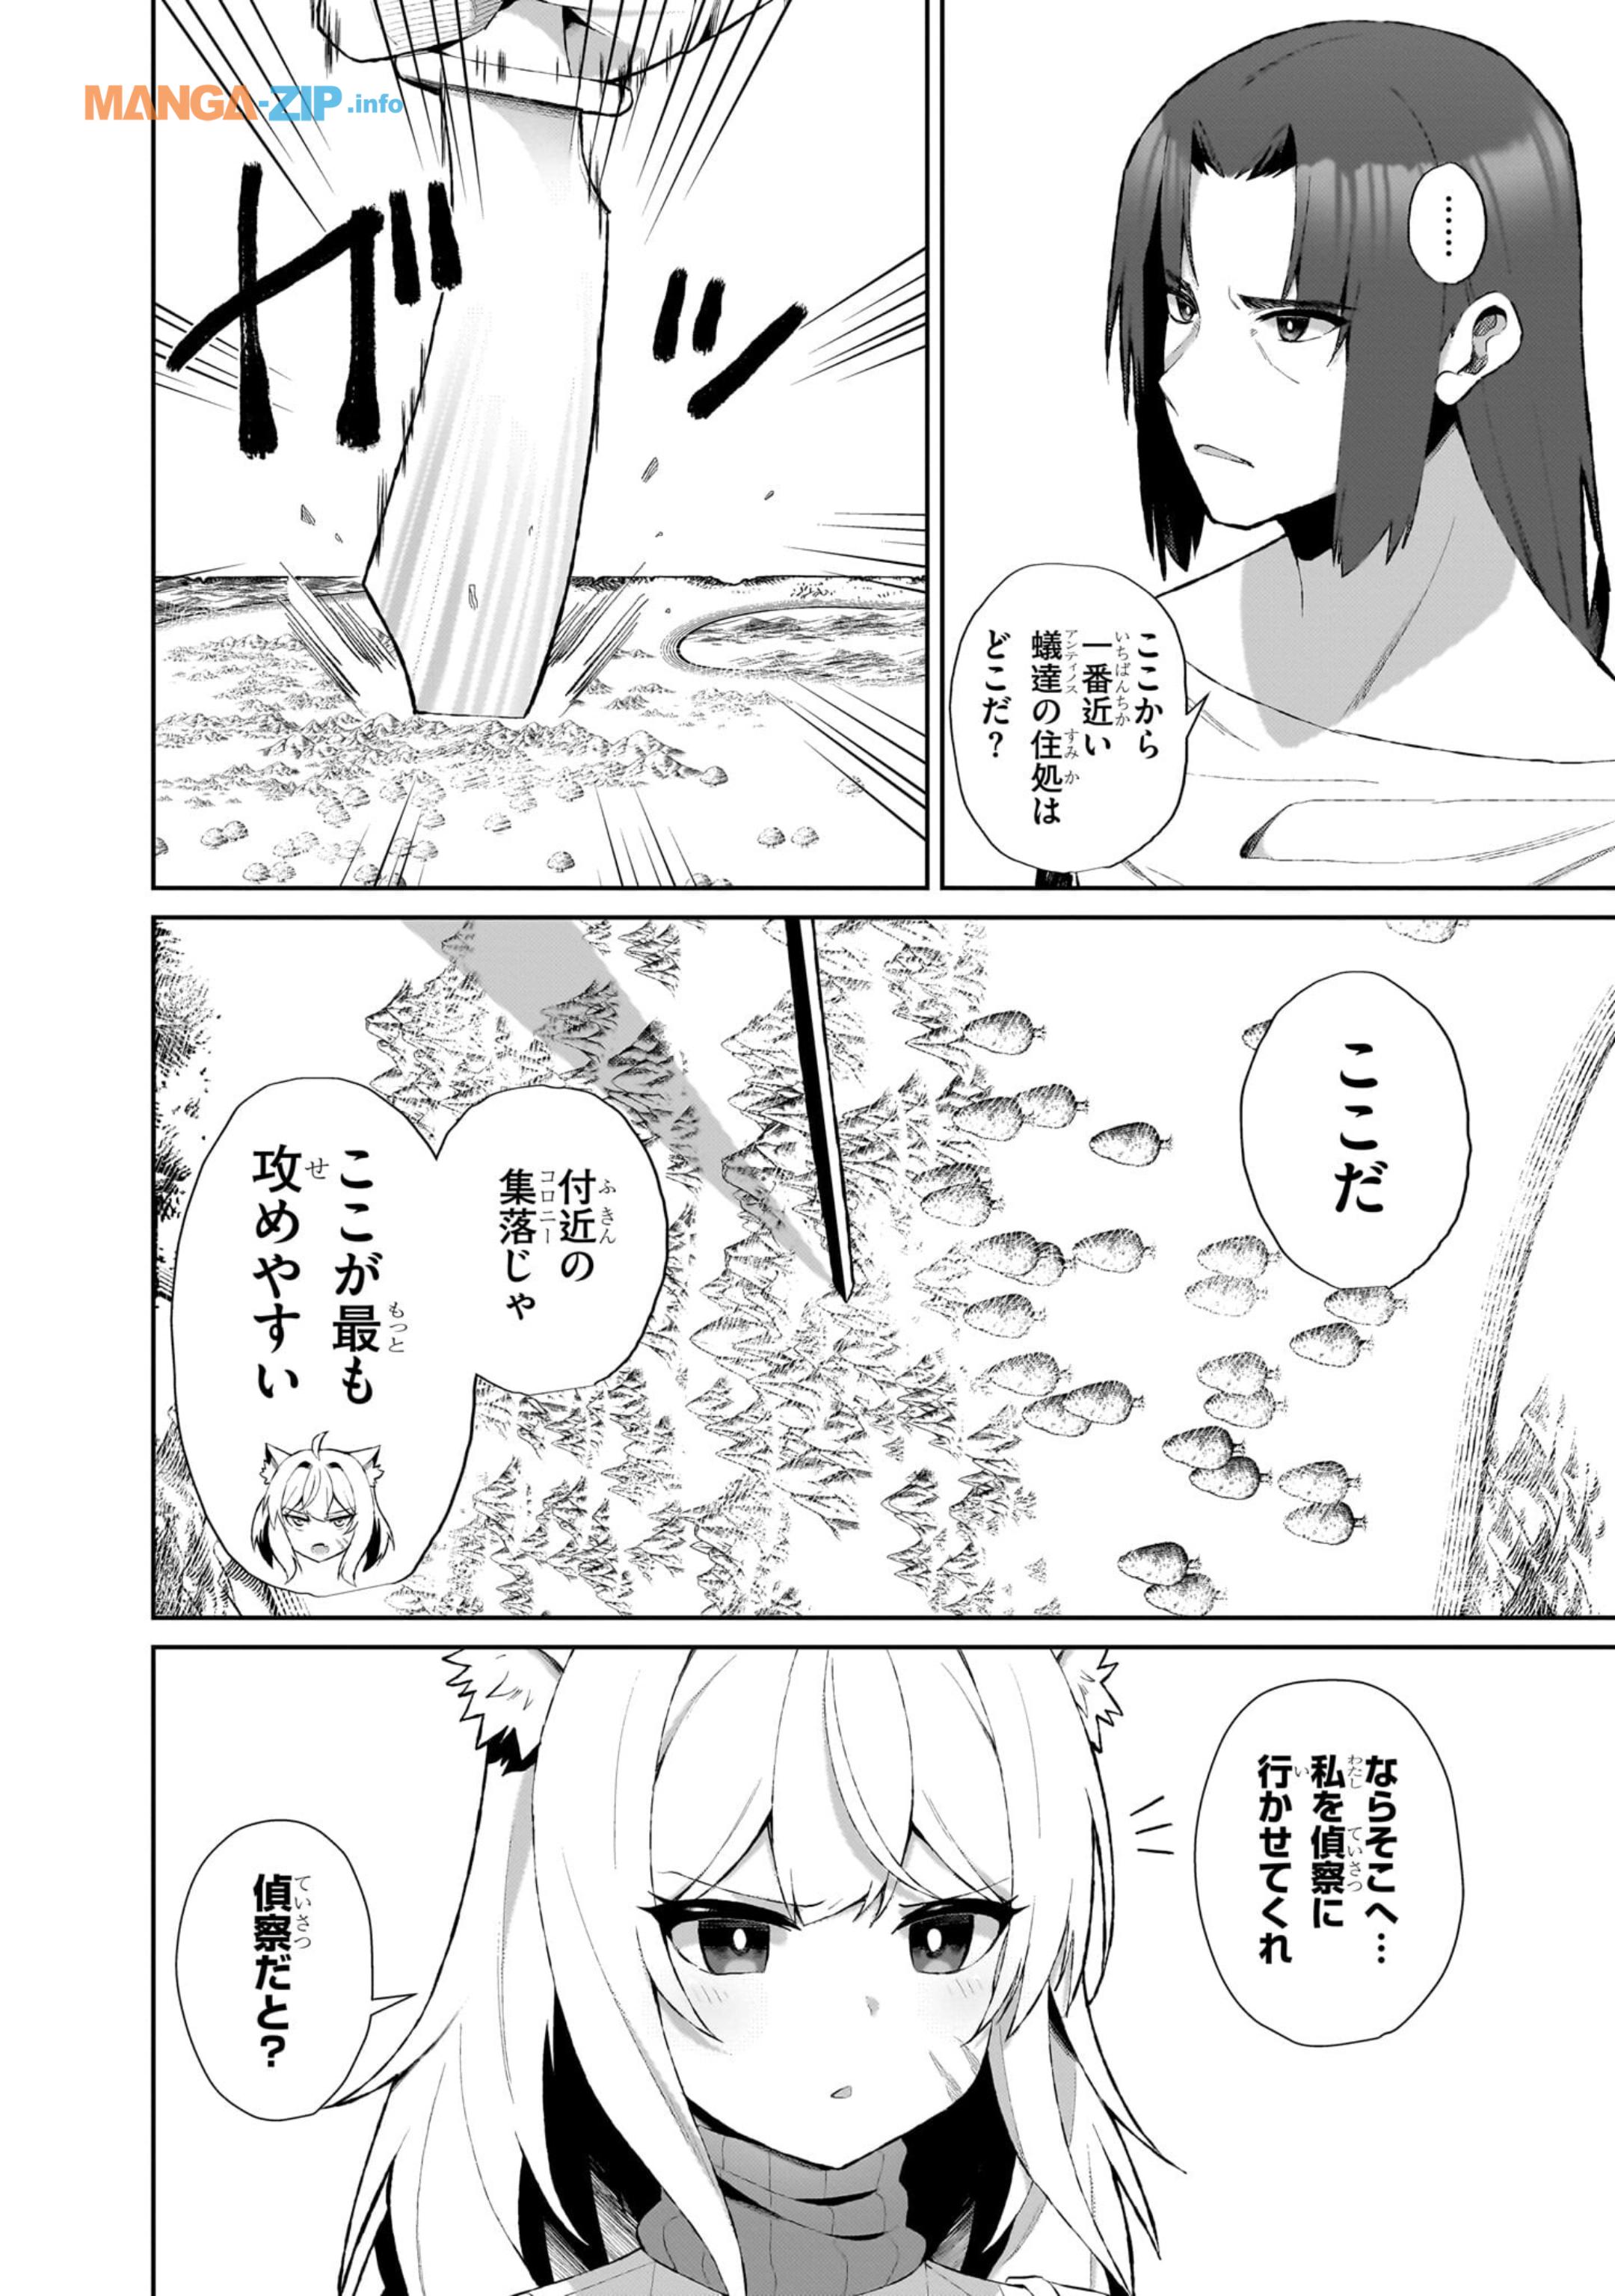 Nogaku Hakase no Isekai Muso Kinki no Chishiki de Kizuku Monster Musume Harem - Chapter 3 - Page 2